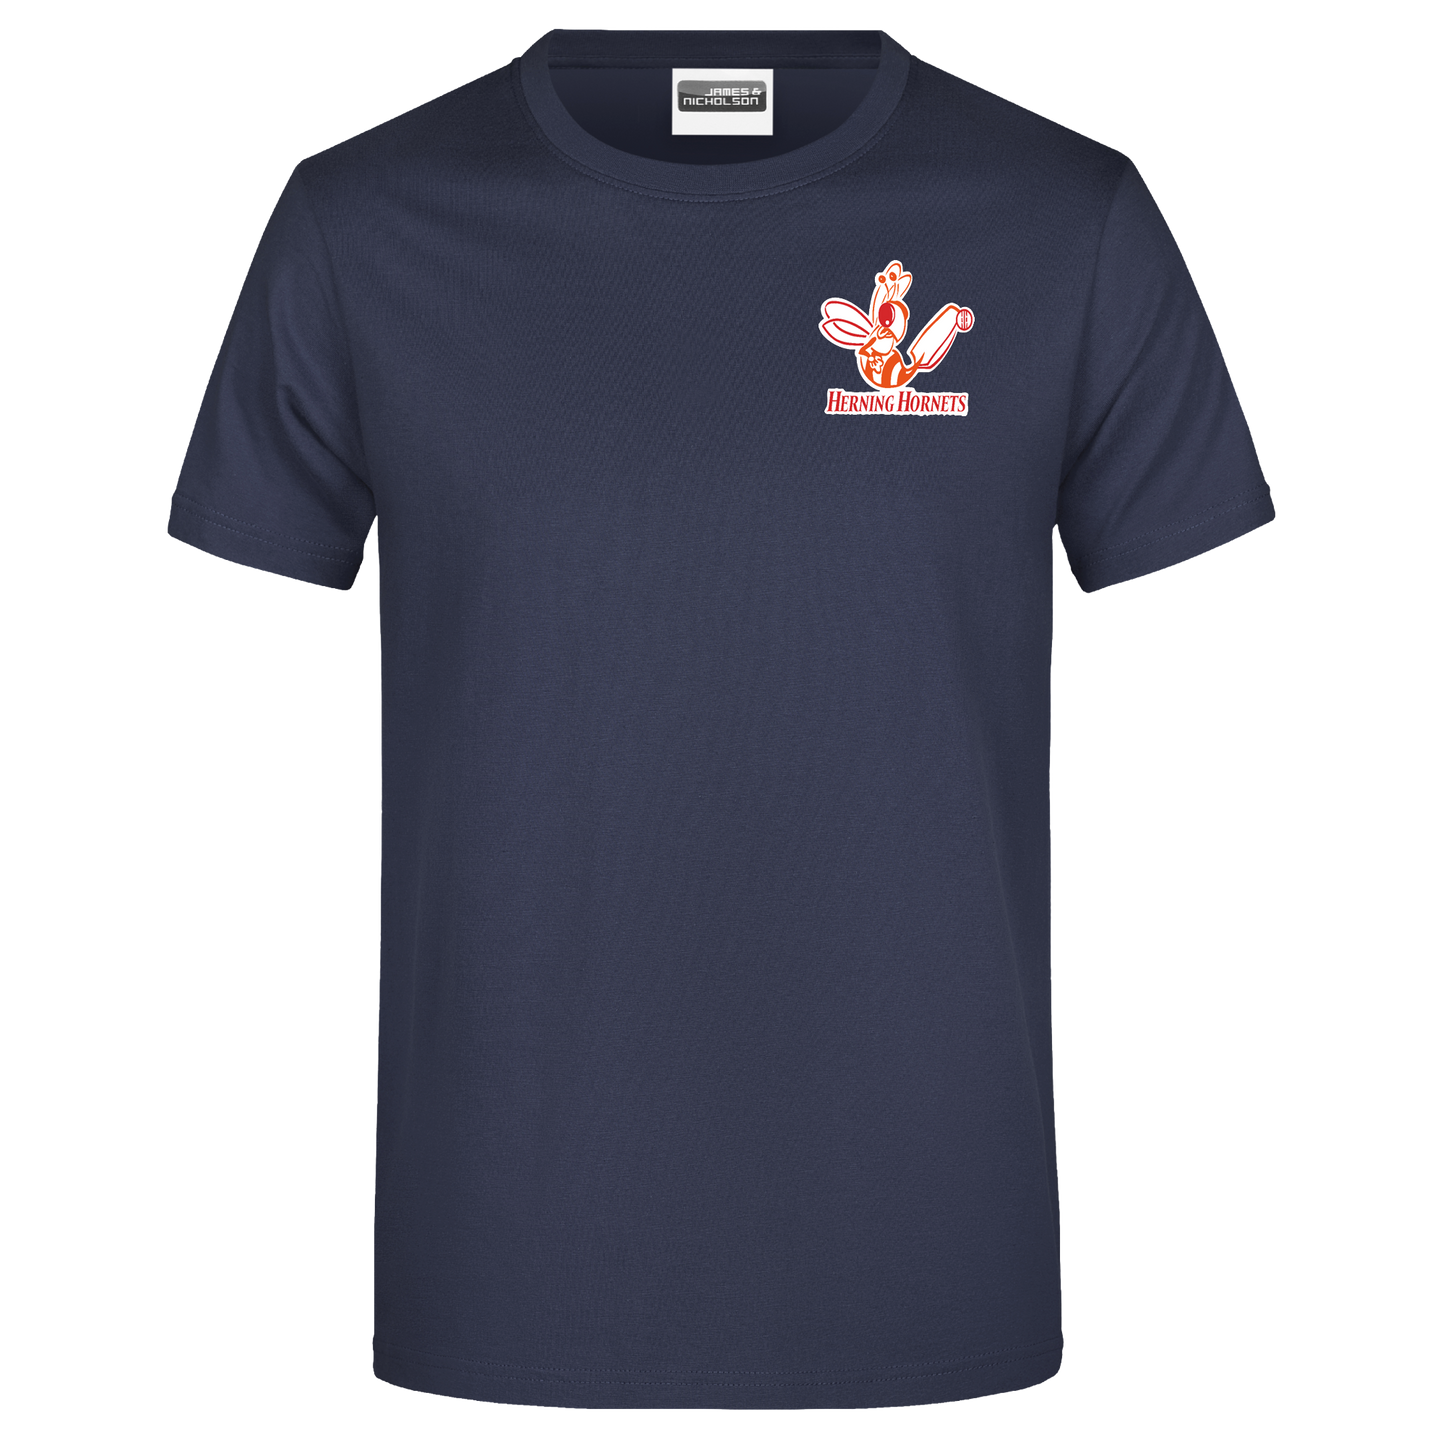 Bomulds T-shirt - Barn - Herning Hornets